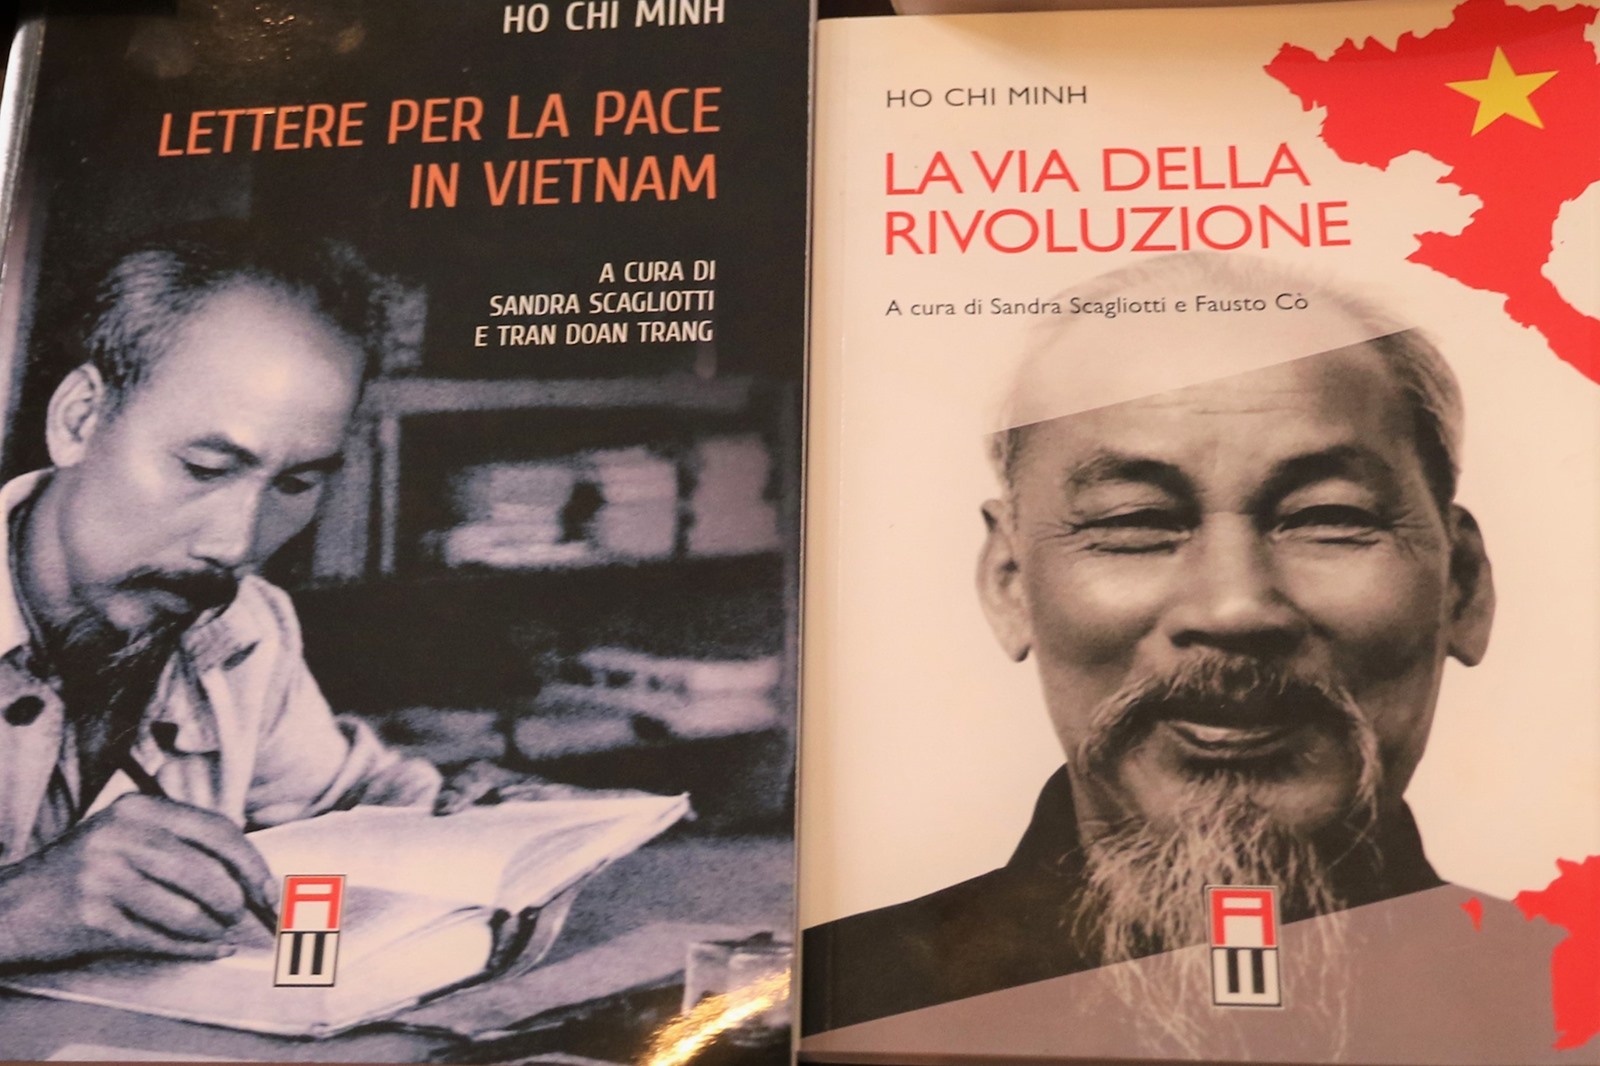 Các tác phẩm “Hồ Chí Minh với những bức thư mong muốn hòa bình cho Việt Nam”, “Đường kách mệnh” được dịch sang tiếng Italy.